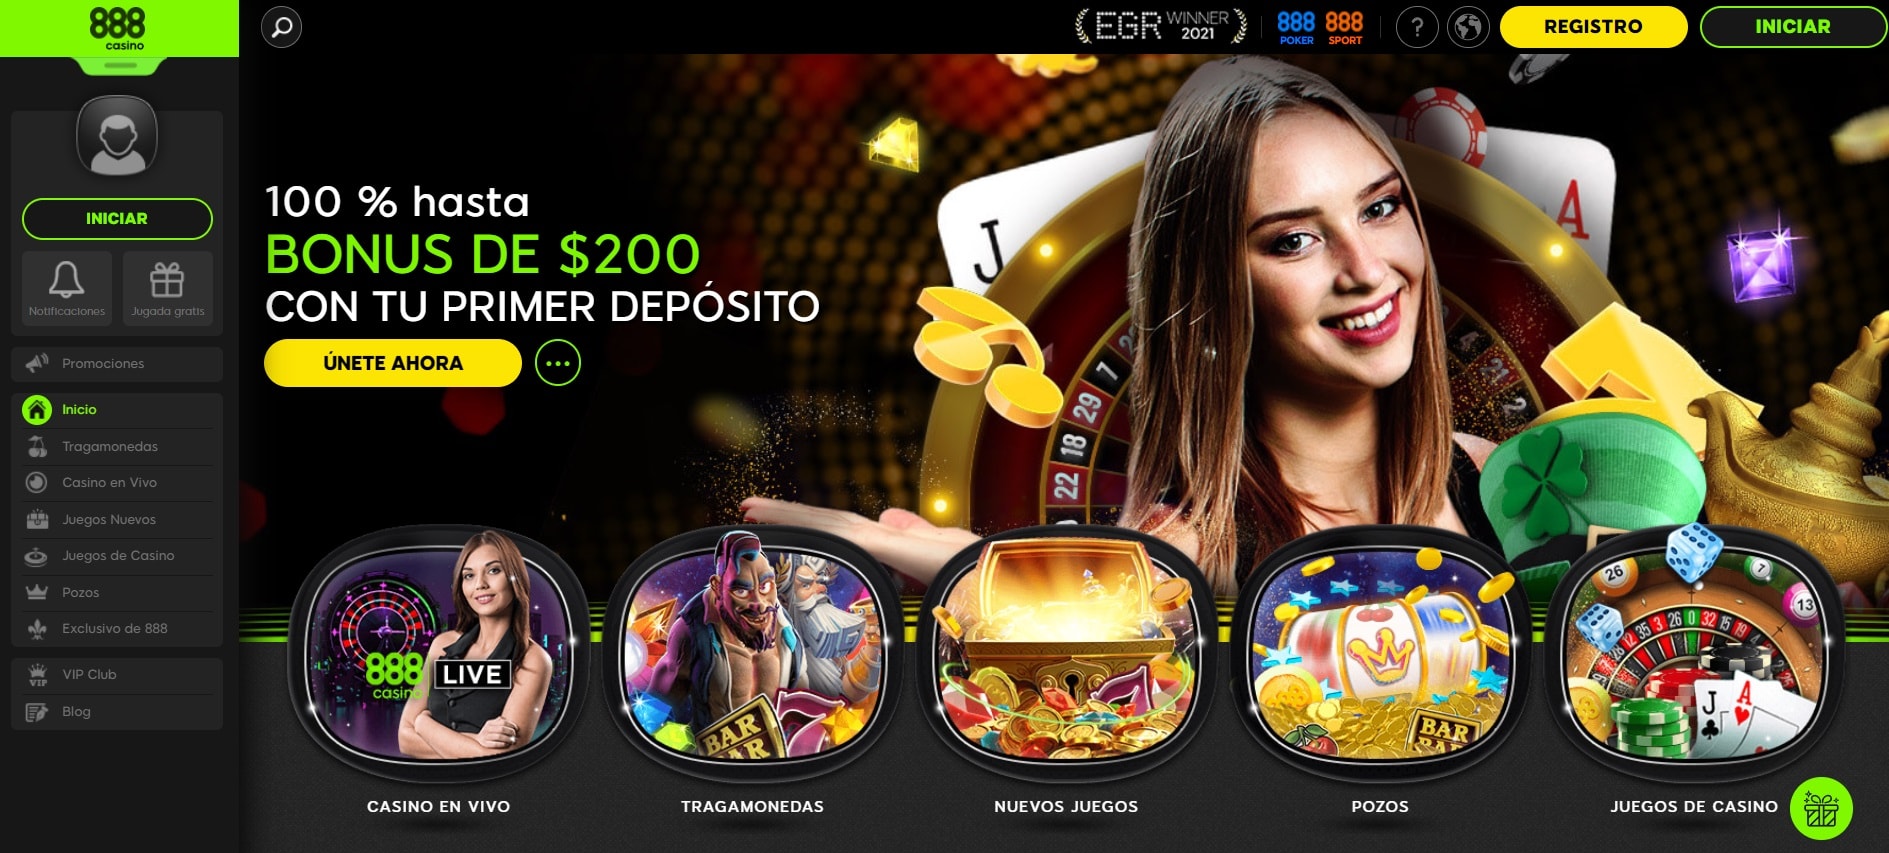 888 casino argentina